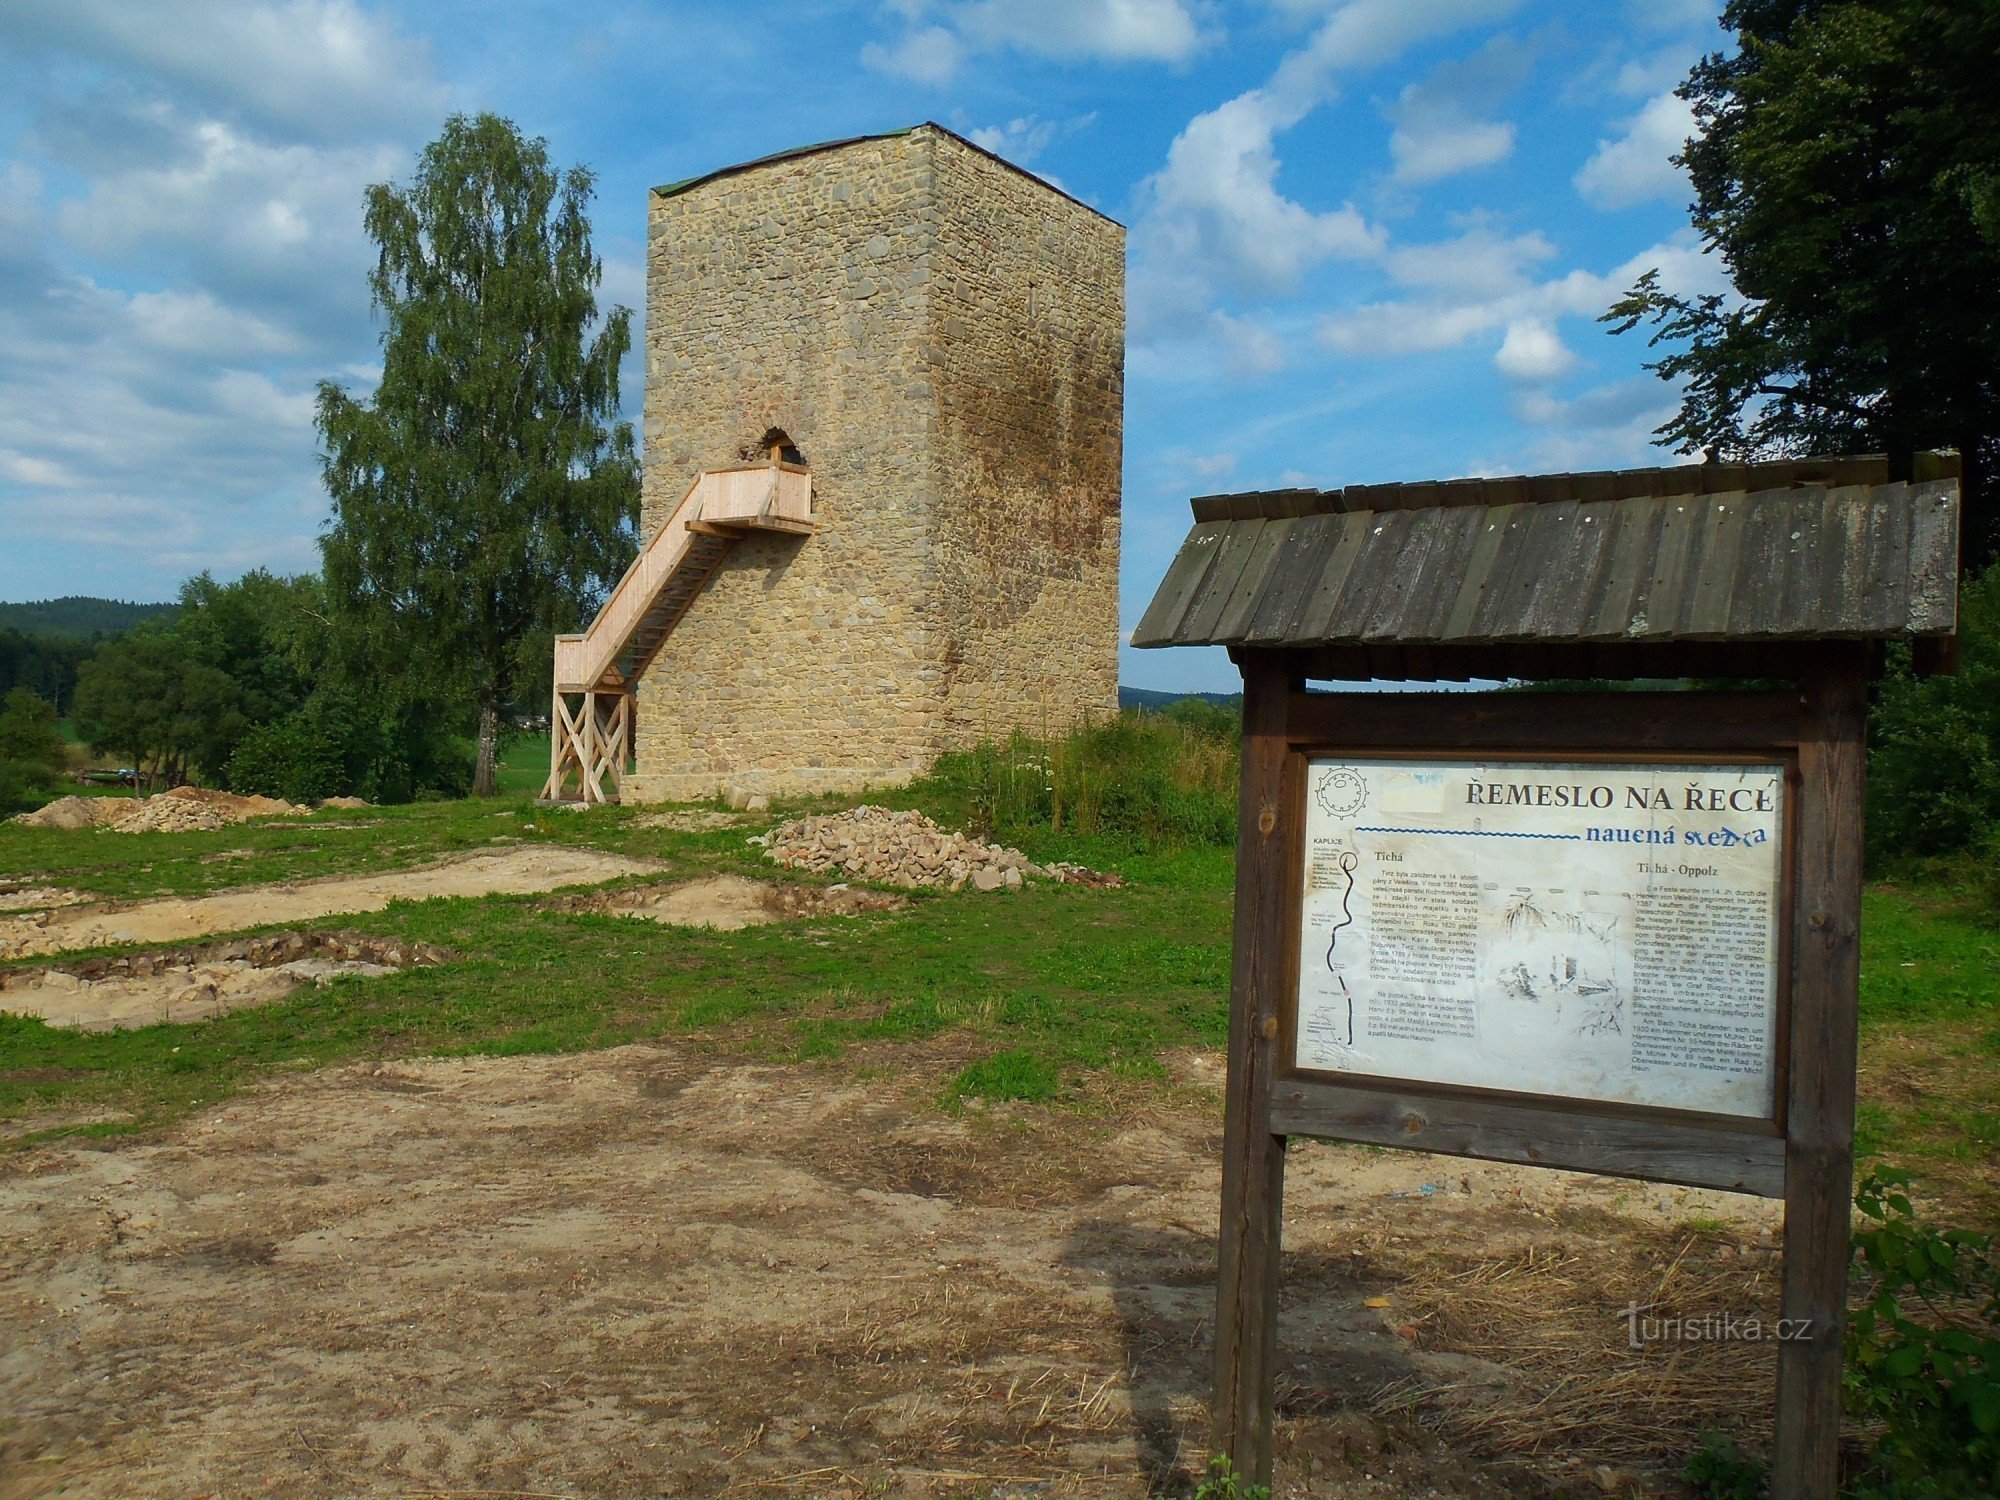 Toegang tot de toren van het voormalige fort vanaf de Heilige Steen